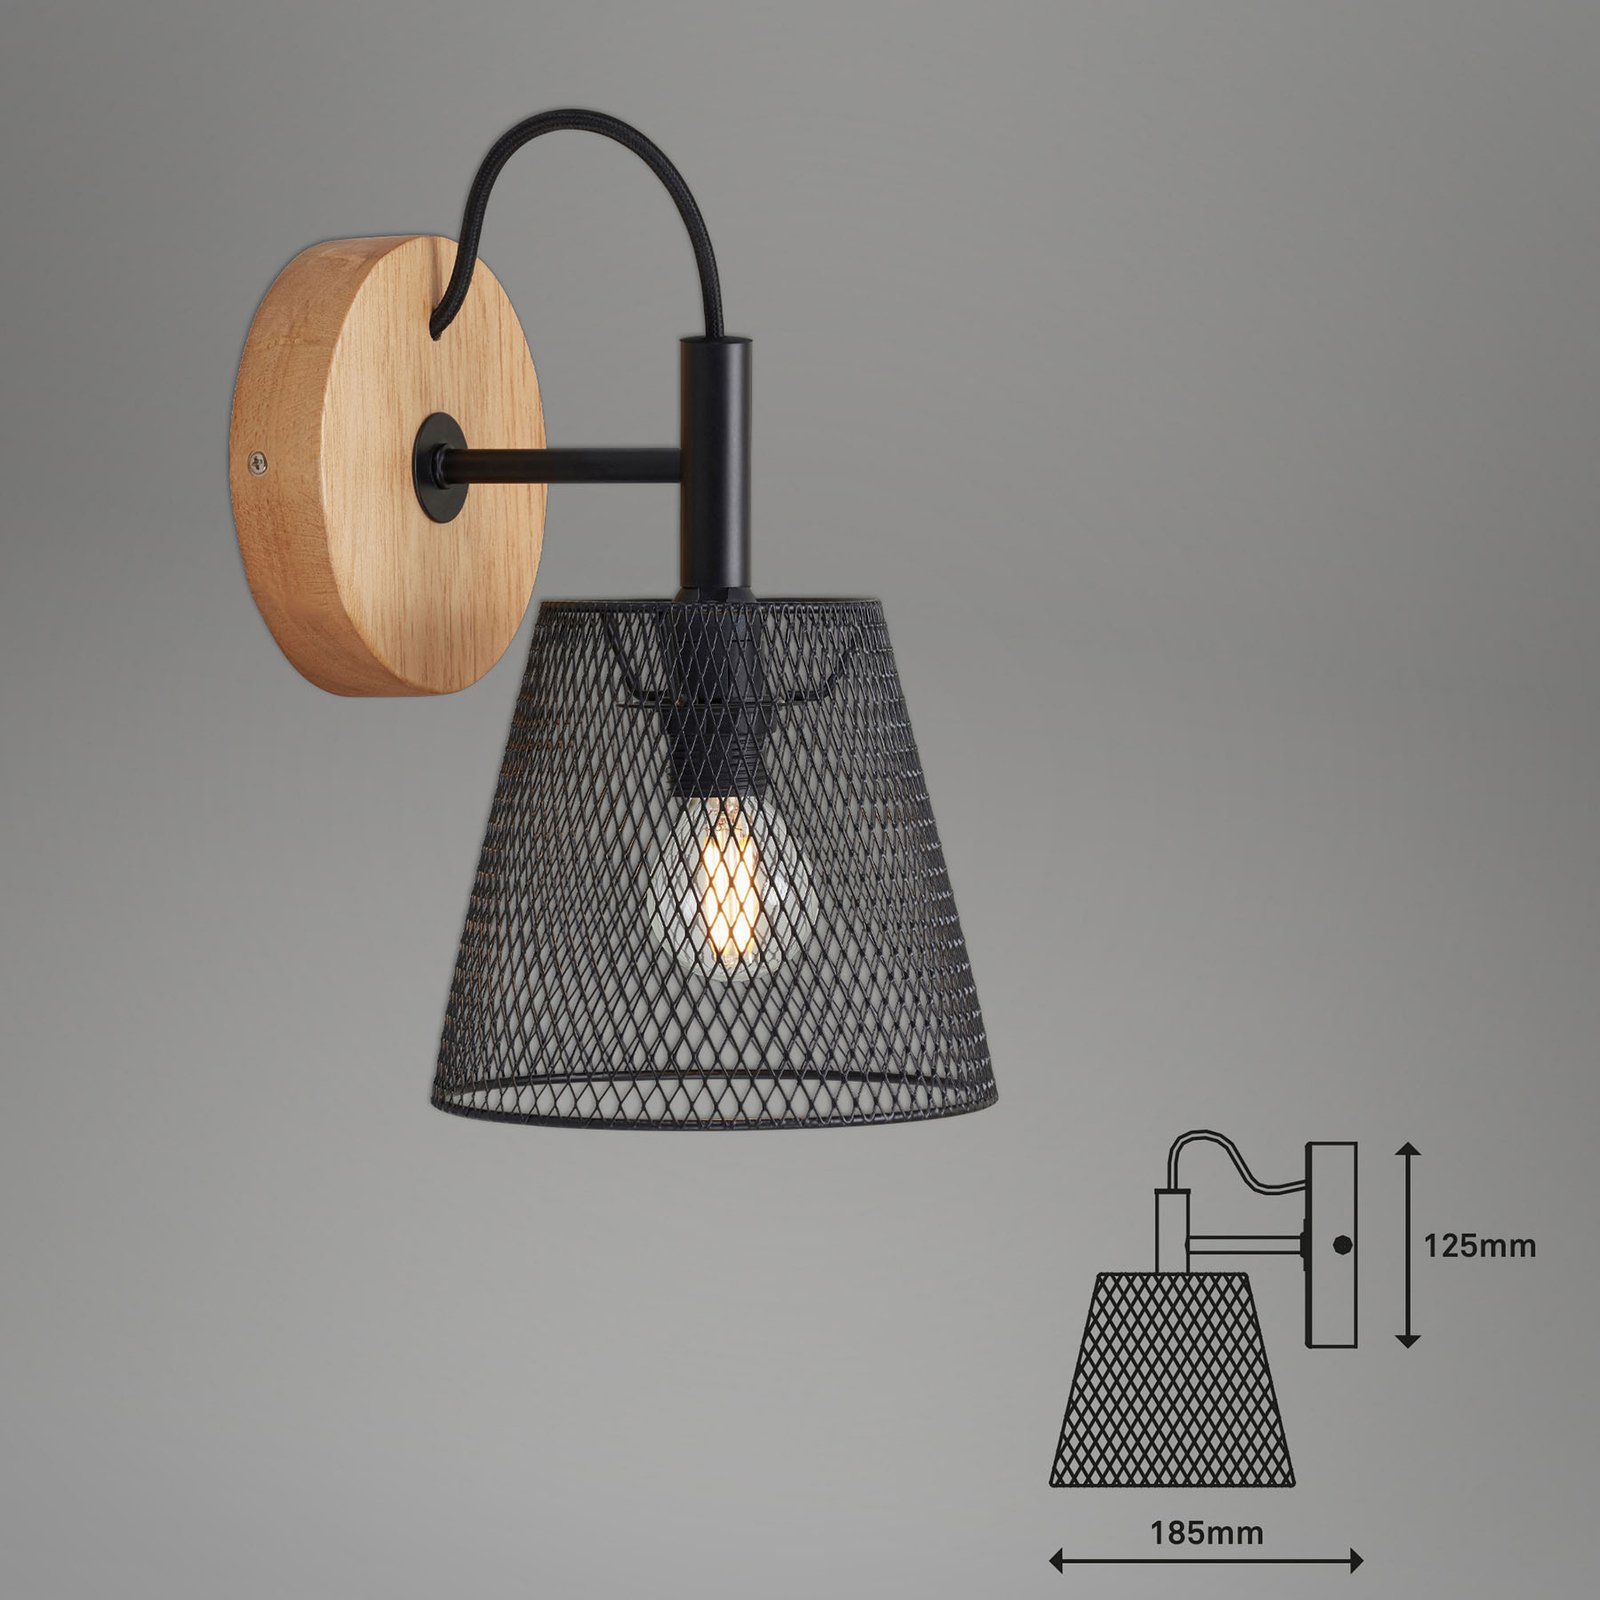 Wood & Style 2077 Wandlampe mit Streckmetallschim